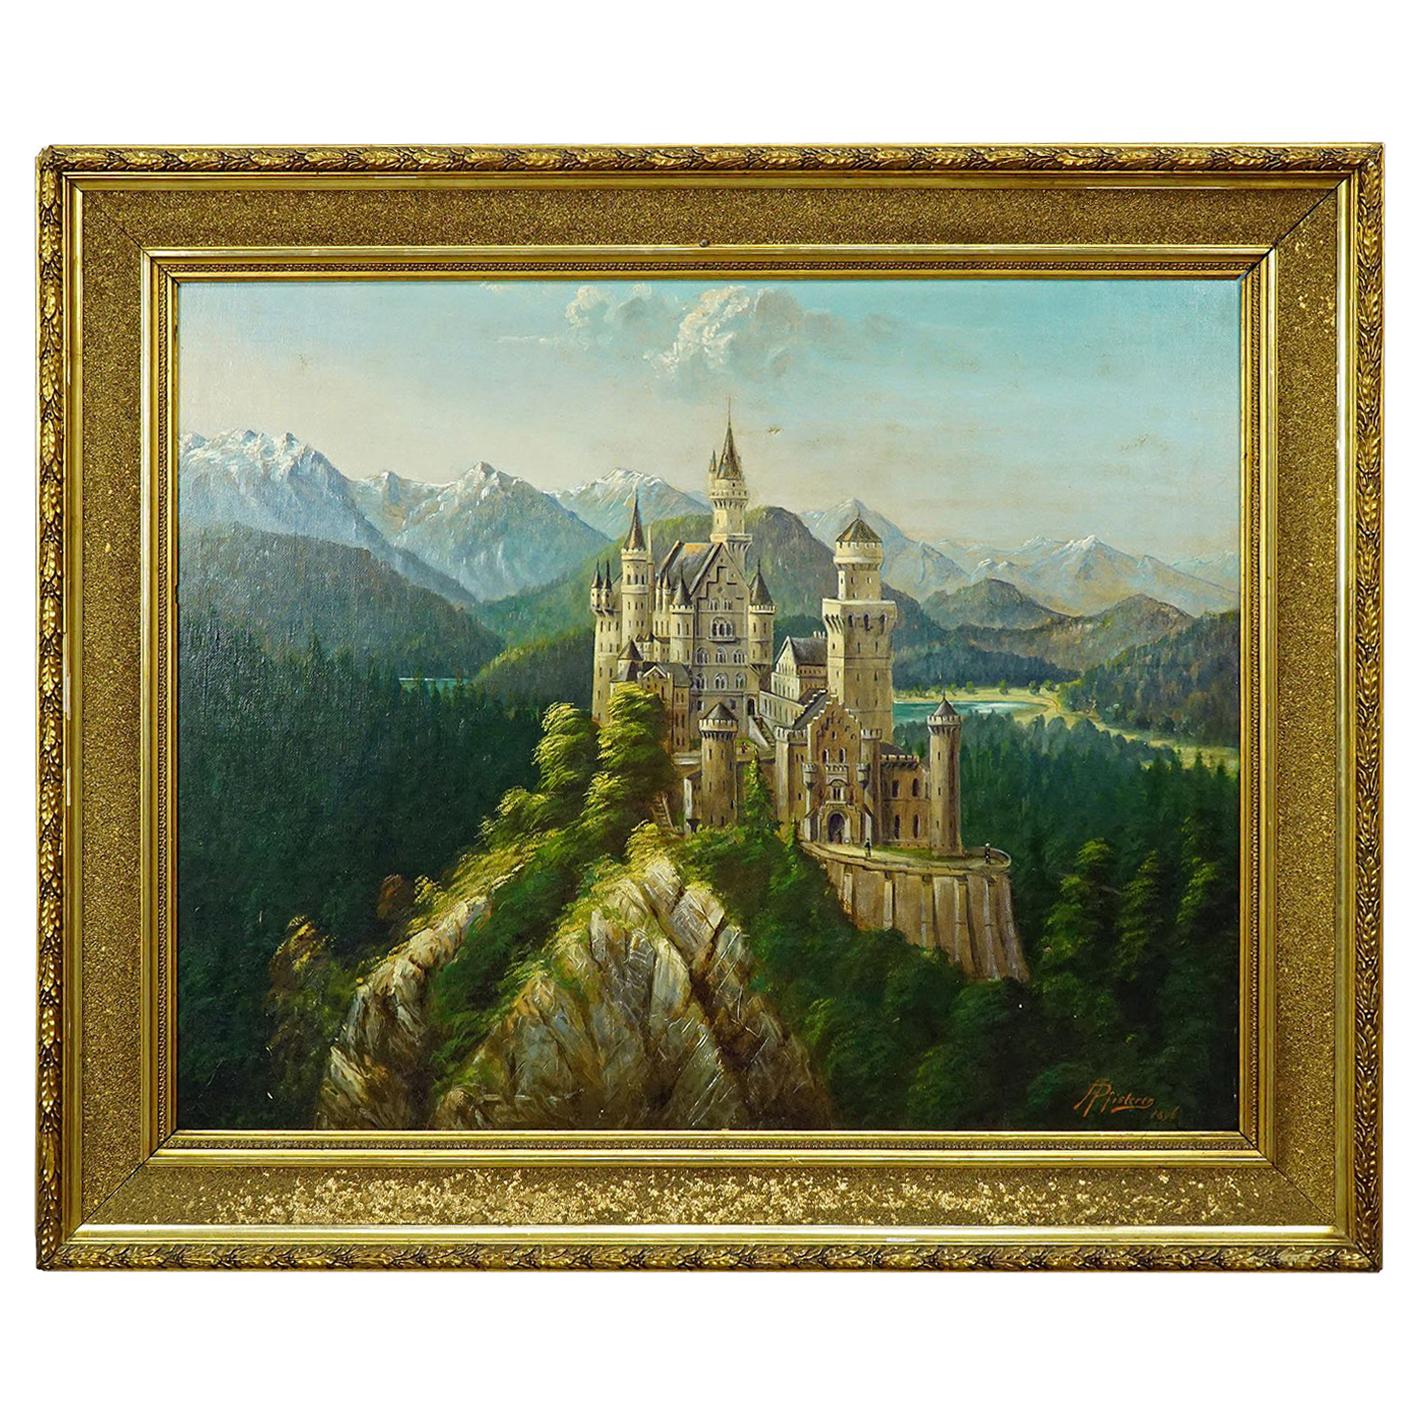 A. Pfisterer, the Fairytale Castle Neuschwanstein, 1896